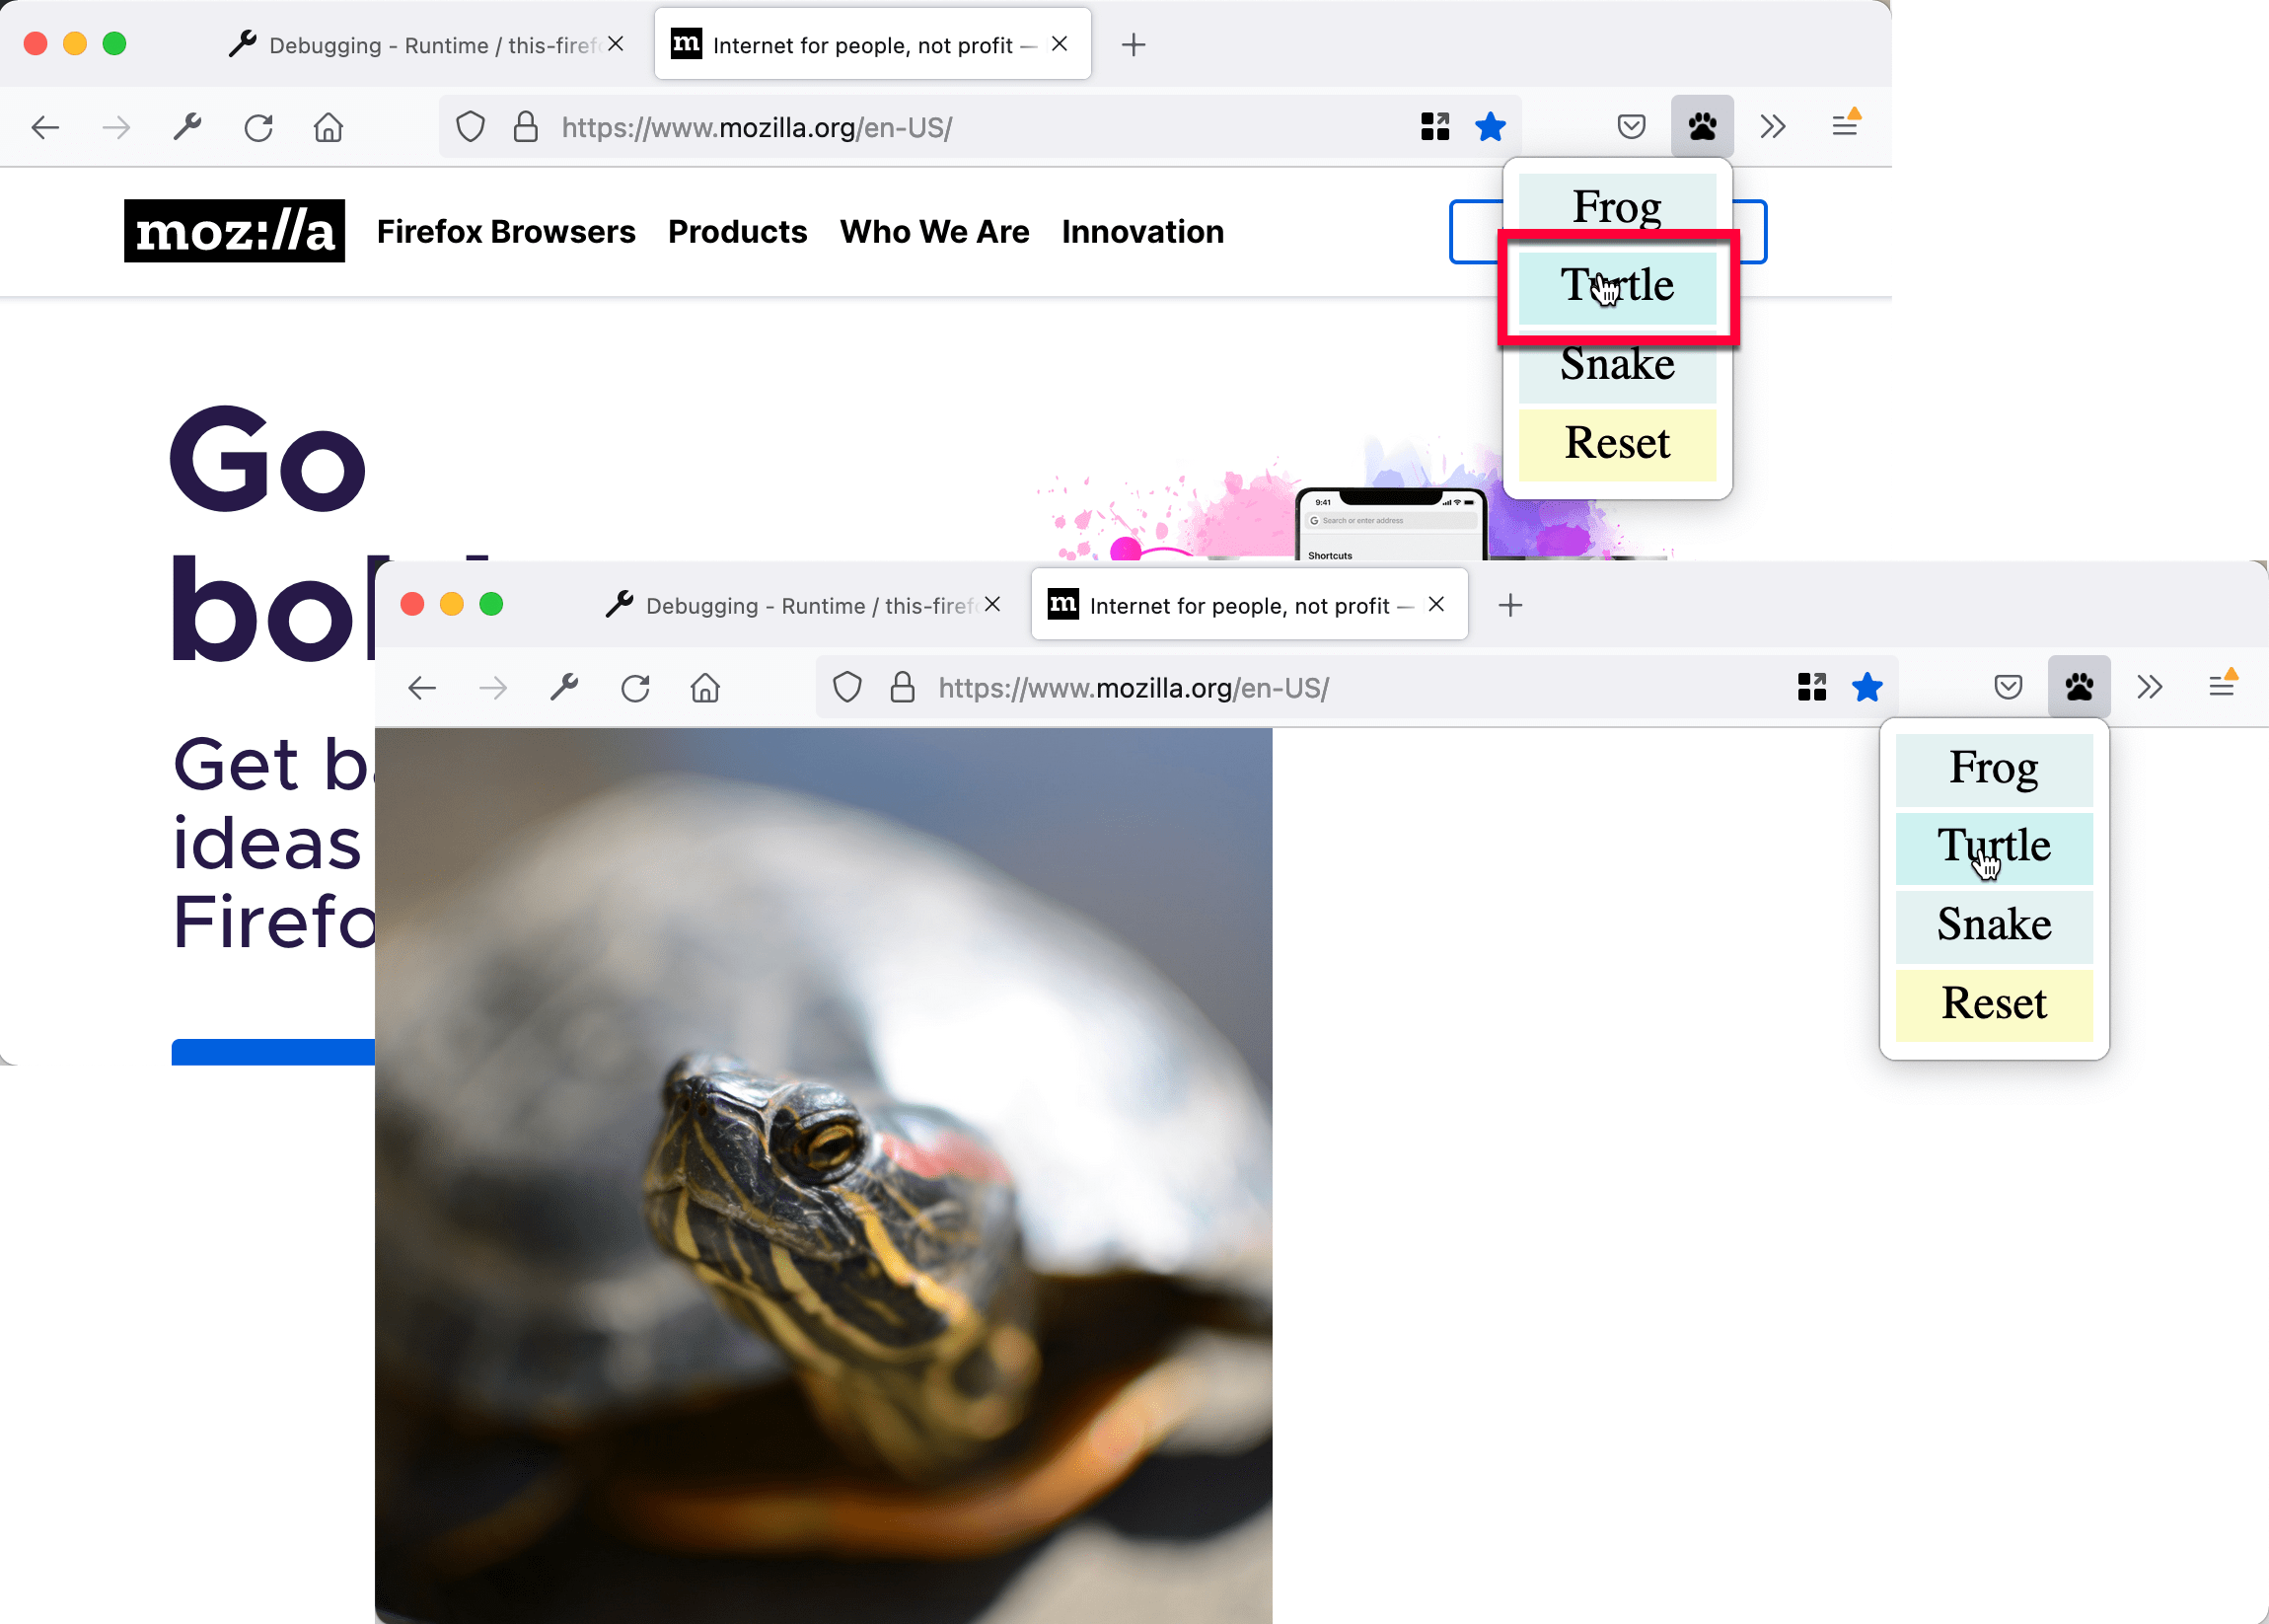 被替换成乌龟图像的页面。